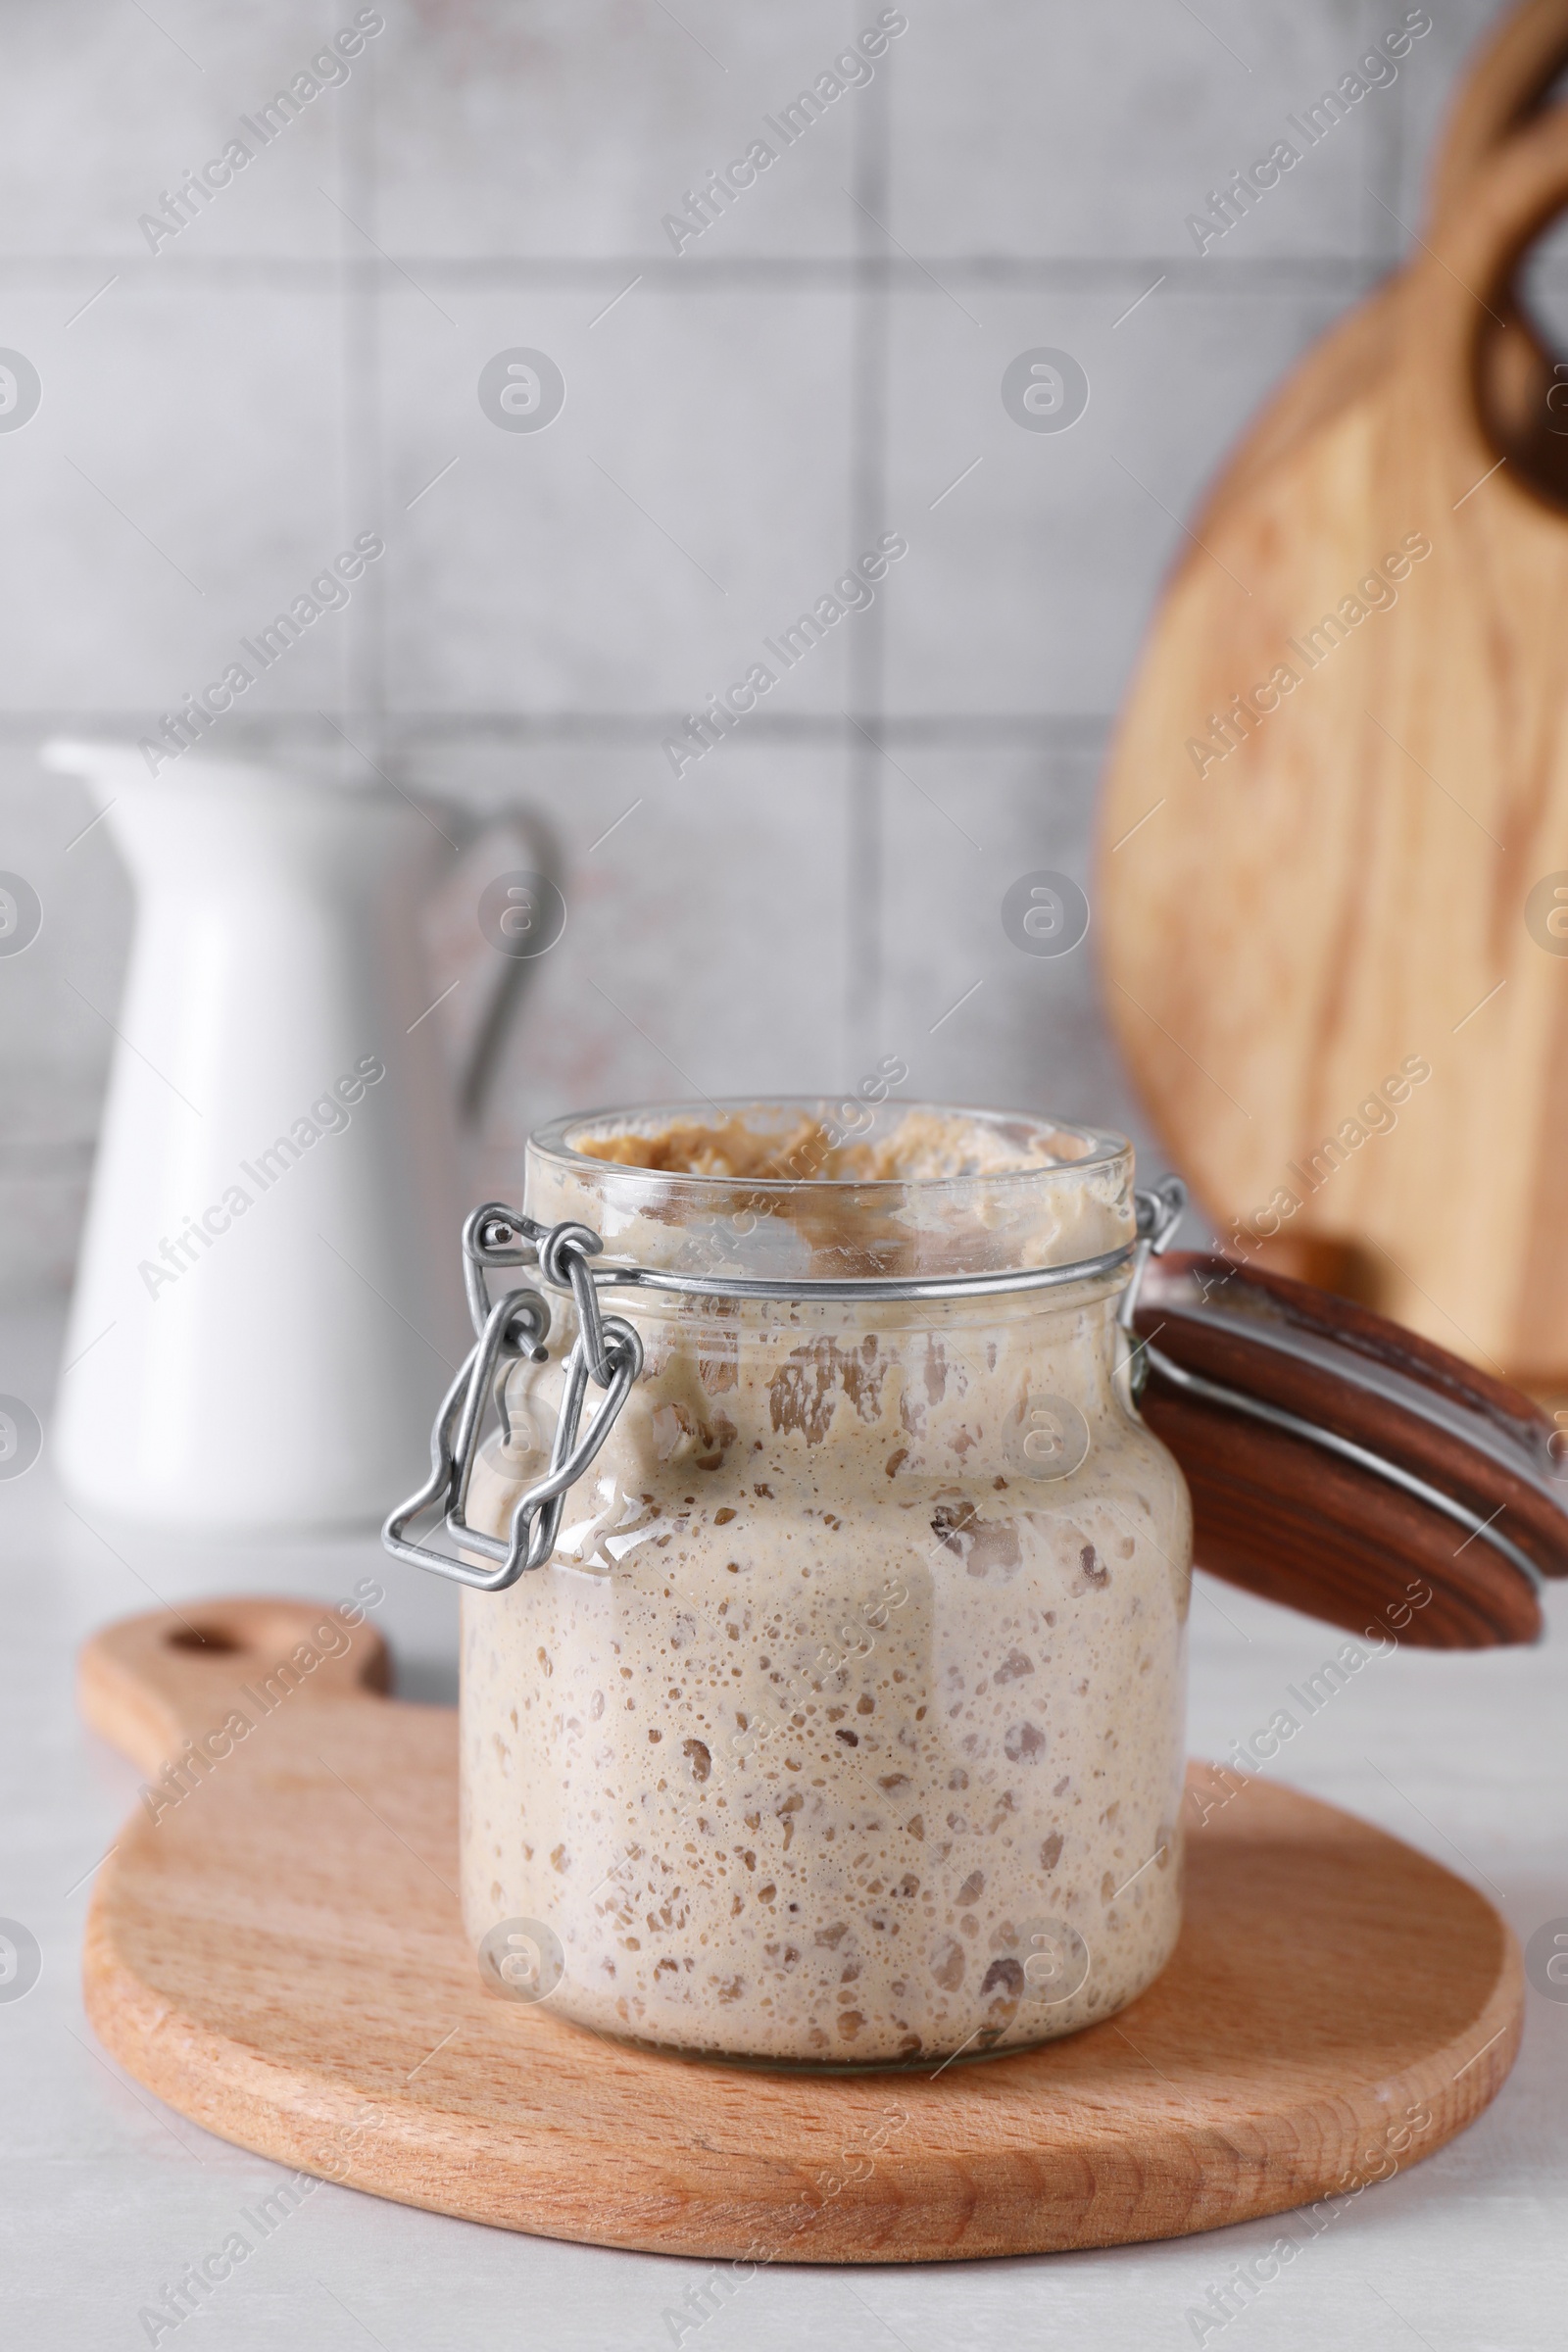 Photo of Sourdough starter in glass jar on light table